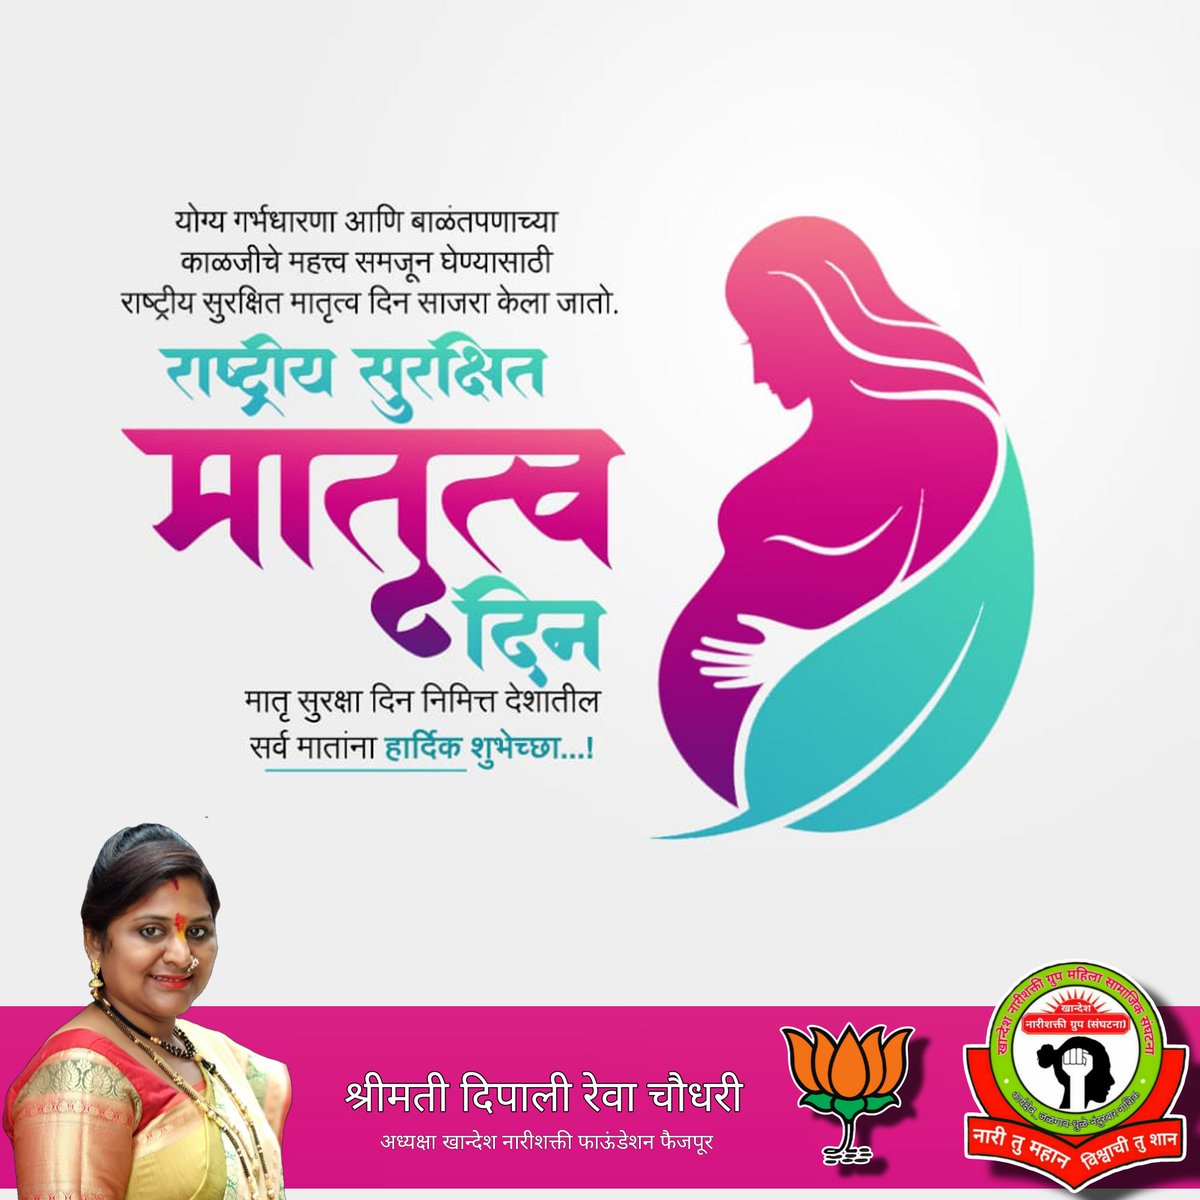 योग्य गर्भधारणा आणि बाळंतपणाच्या काळजीचे महत्त्व समजून घेण्यासाठी राष्ट्रीय सुरक्षित मातृत्व दिन साजरा केला जातो. राष्ट्रीय सुरक्षित मातृत्व दिन मातृ सुरक्षा दिन निमित्त देशातील सर्व मातांना हार्दिक शुभेच्छा...!
#NationalSafeMotherhoodDay